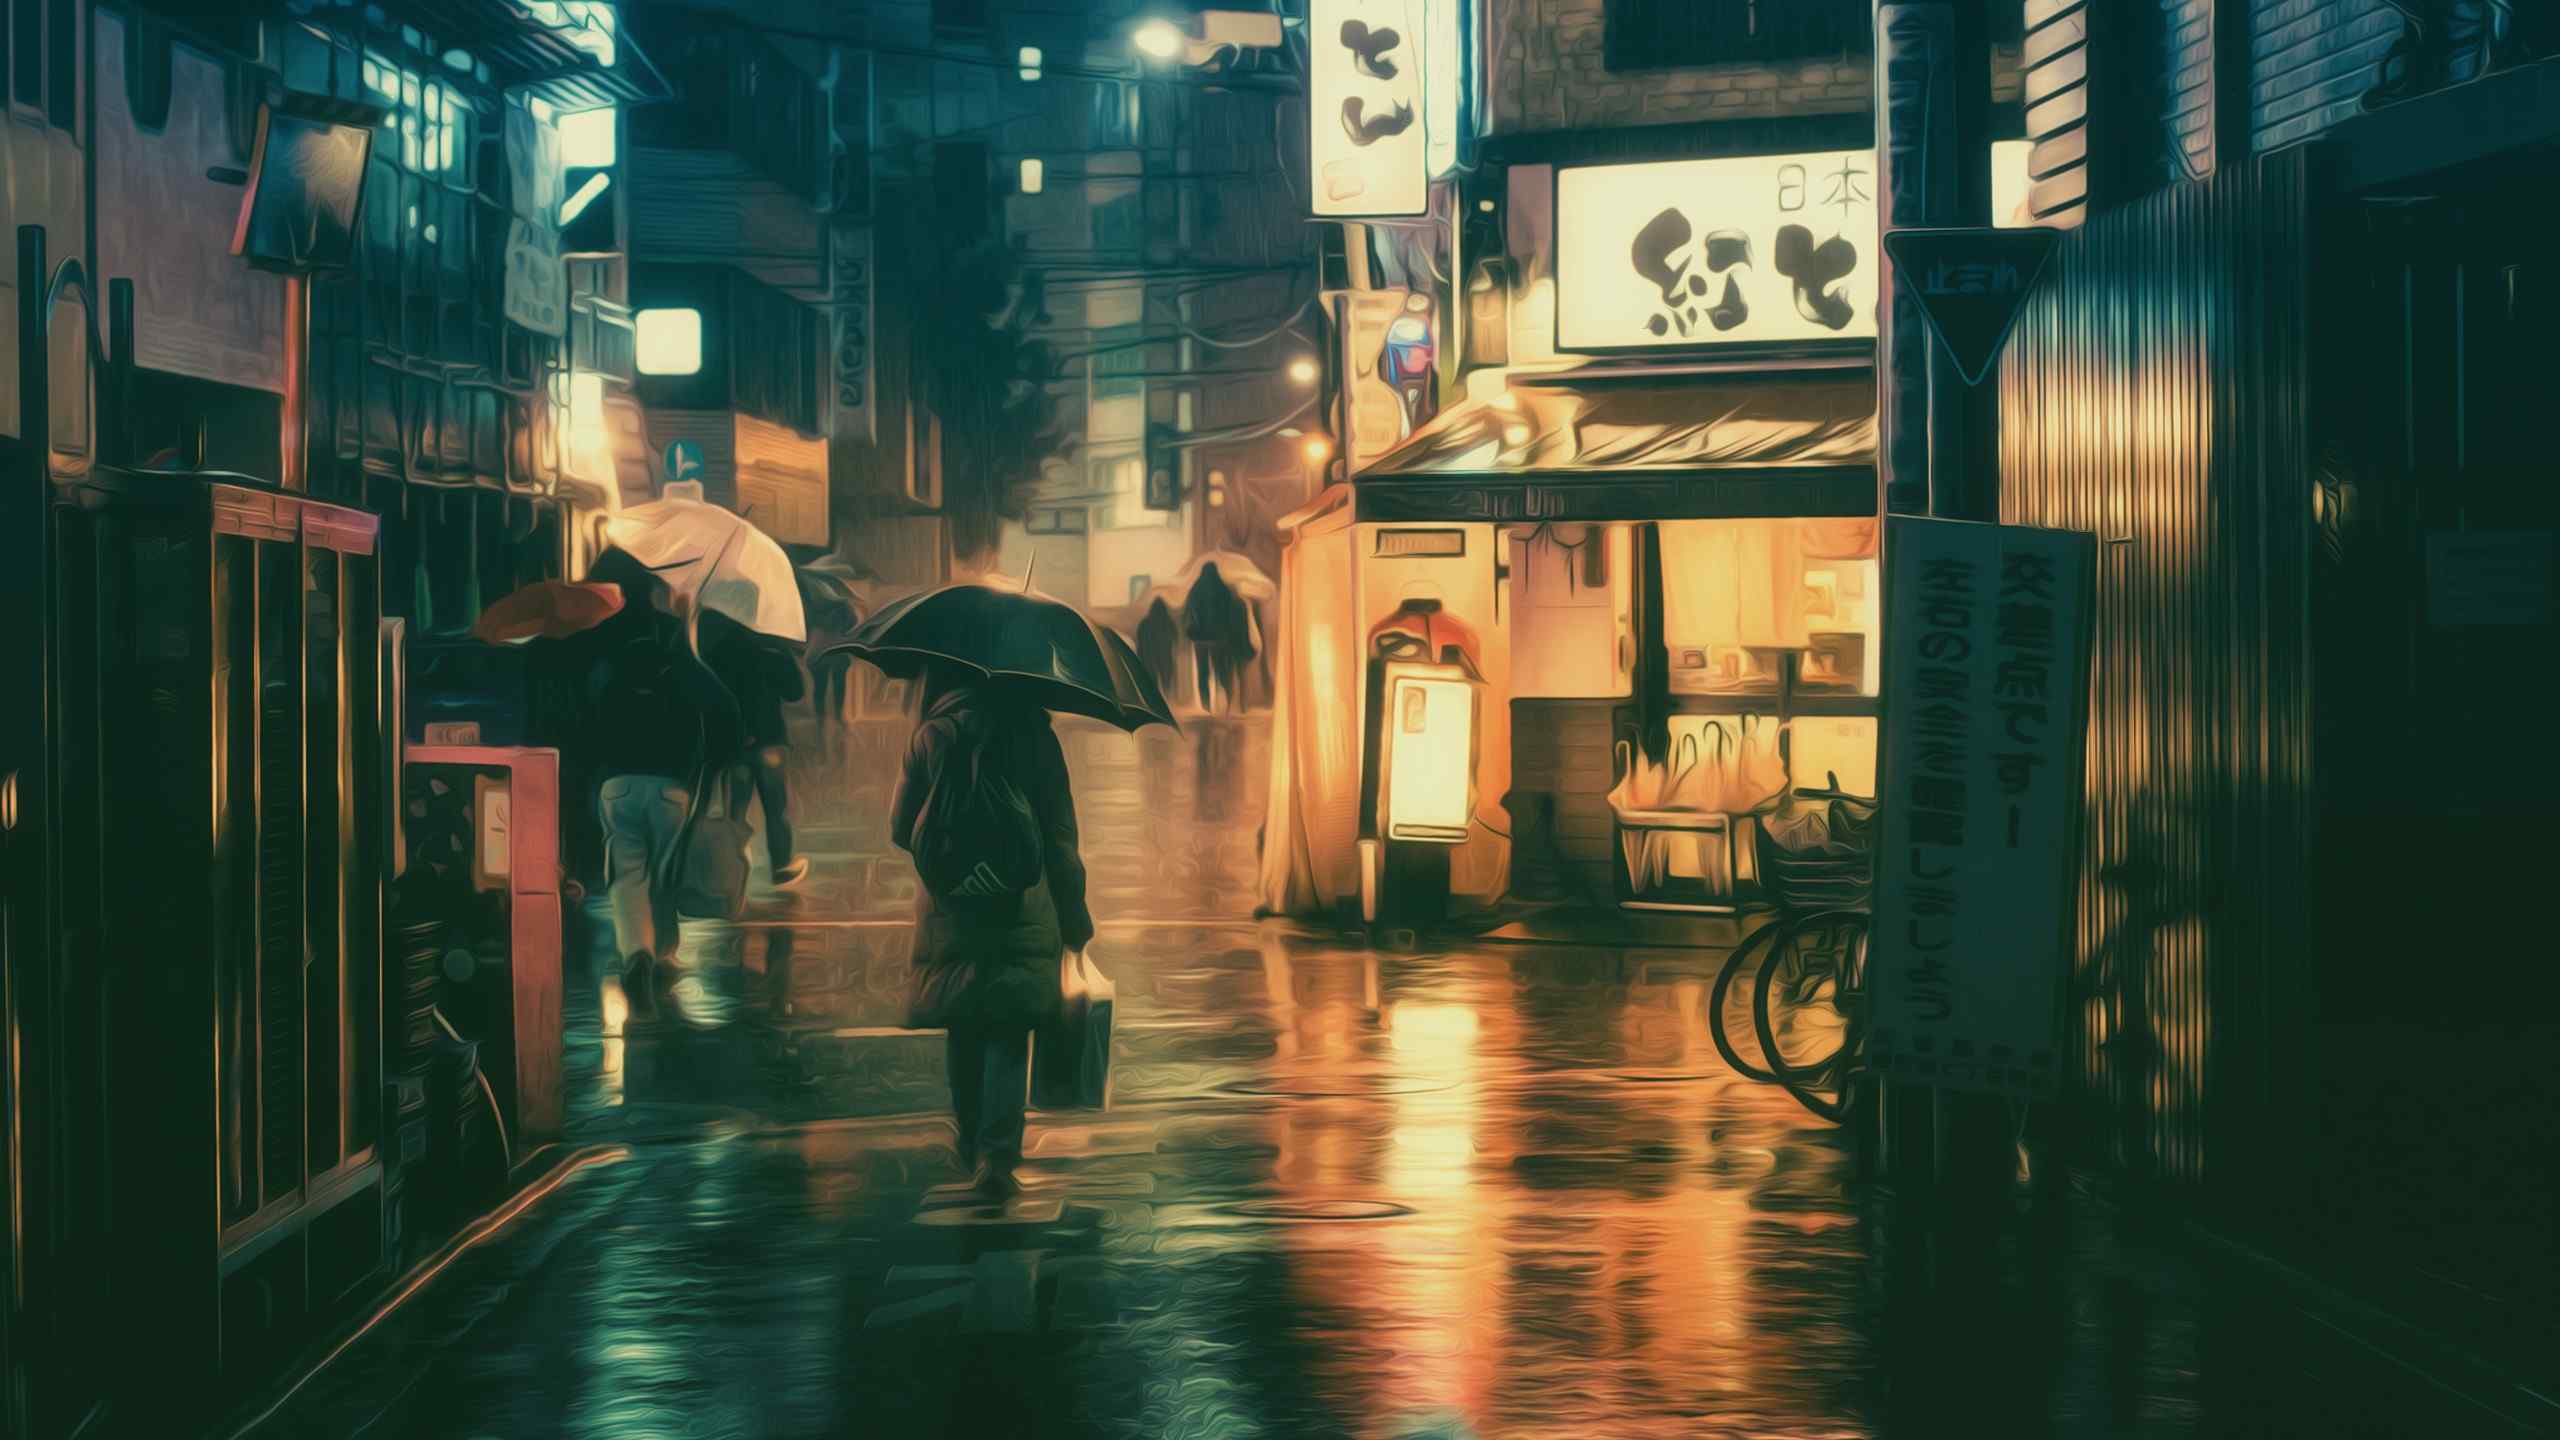 日本街头唯美摄影桌面壁纸 个性图片第二辑